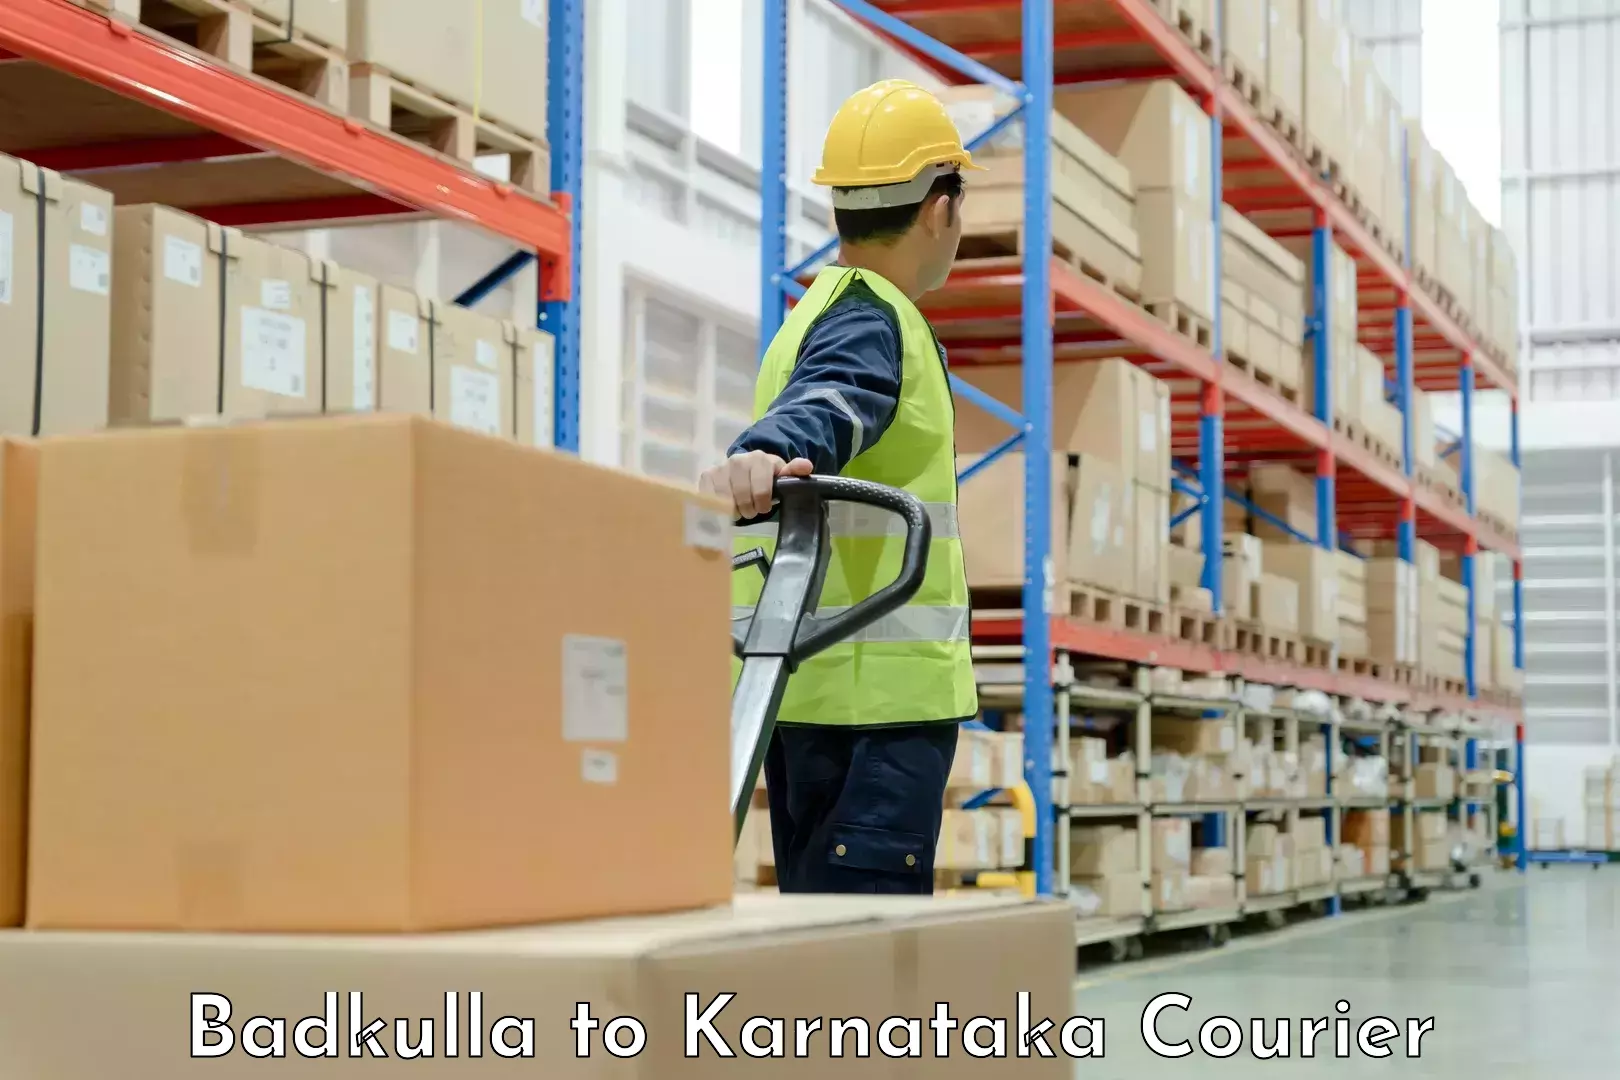 Professional moving company Badkulla to Bantwal